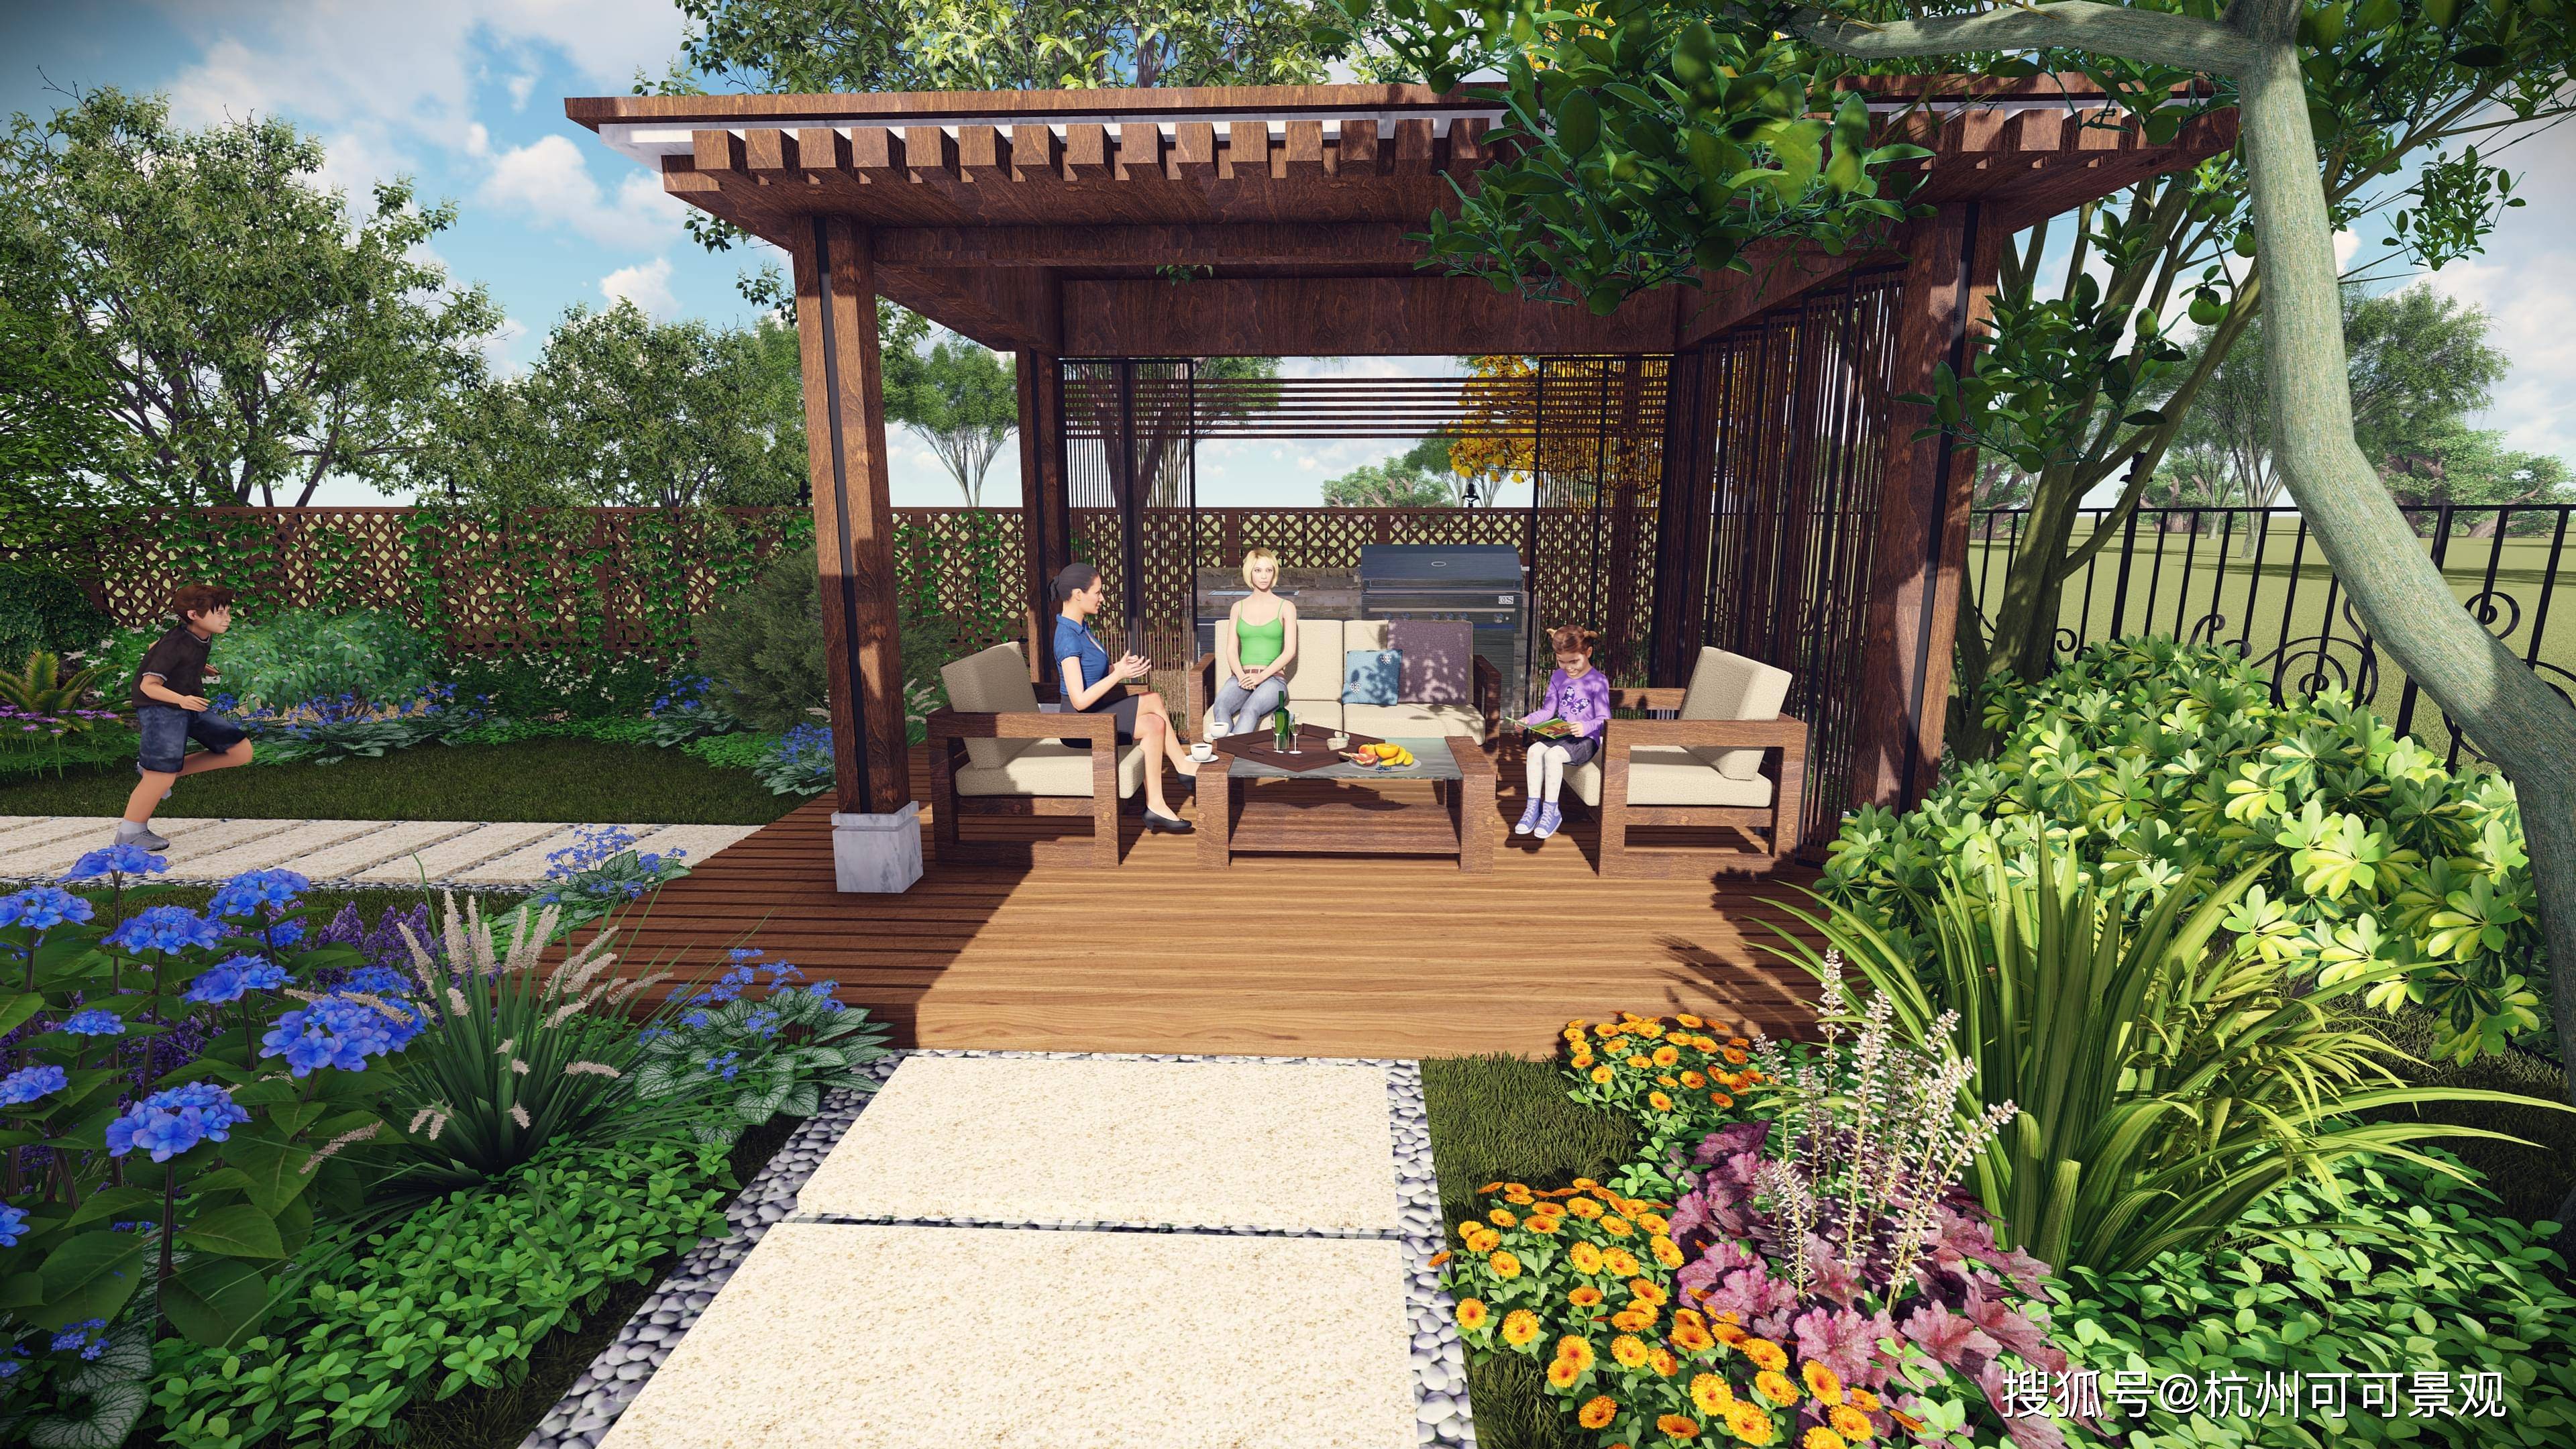 私人庭院设计:设计一个休闲区,打造舒适又惬意的庭院生活!